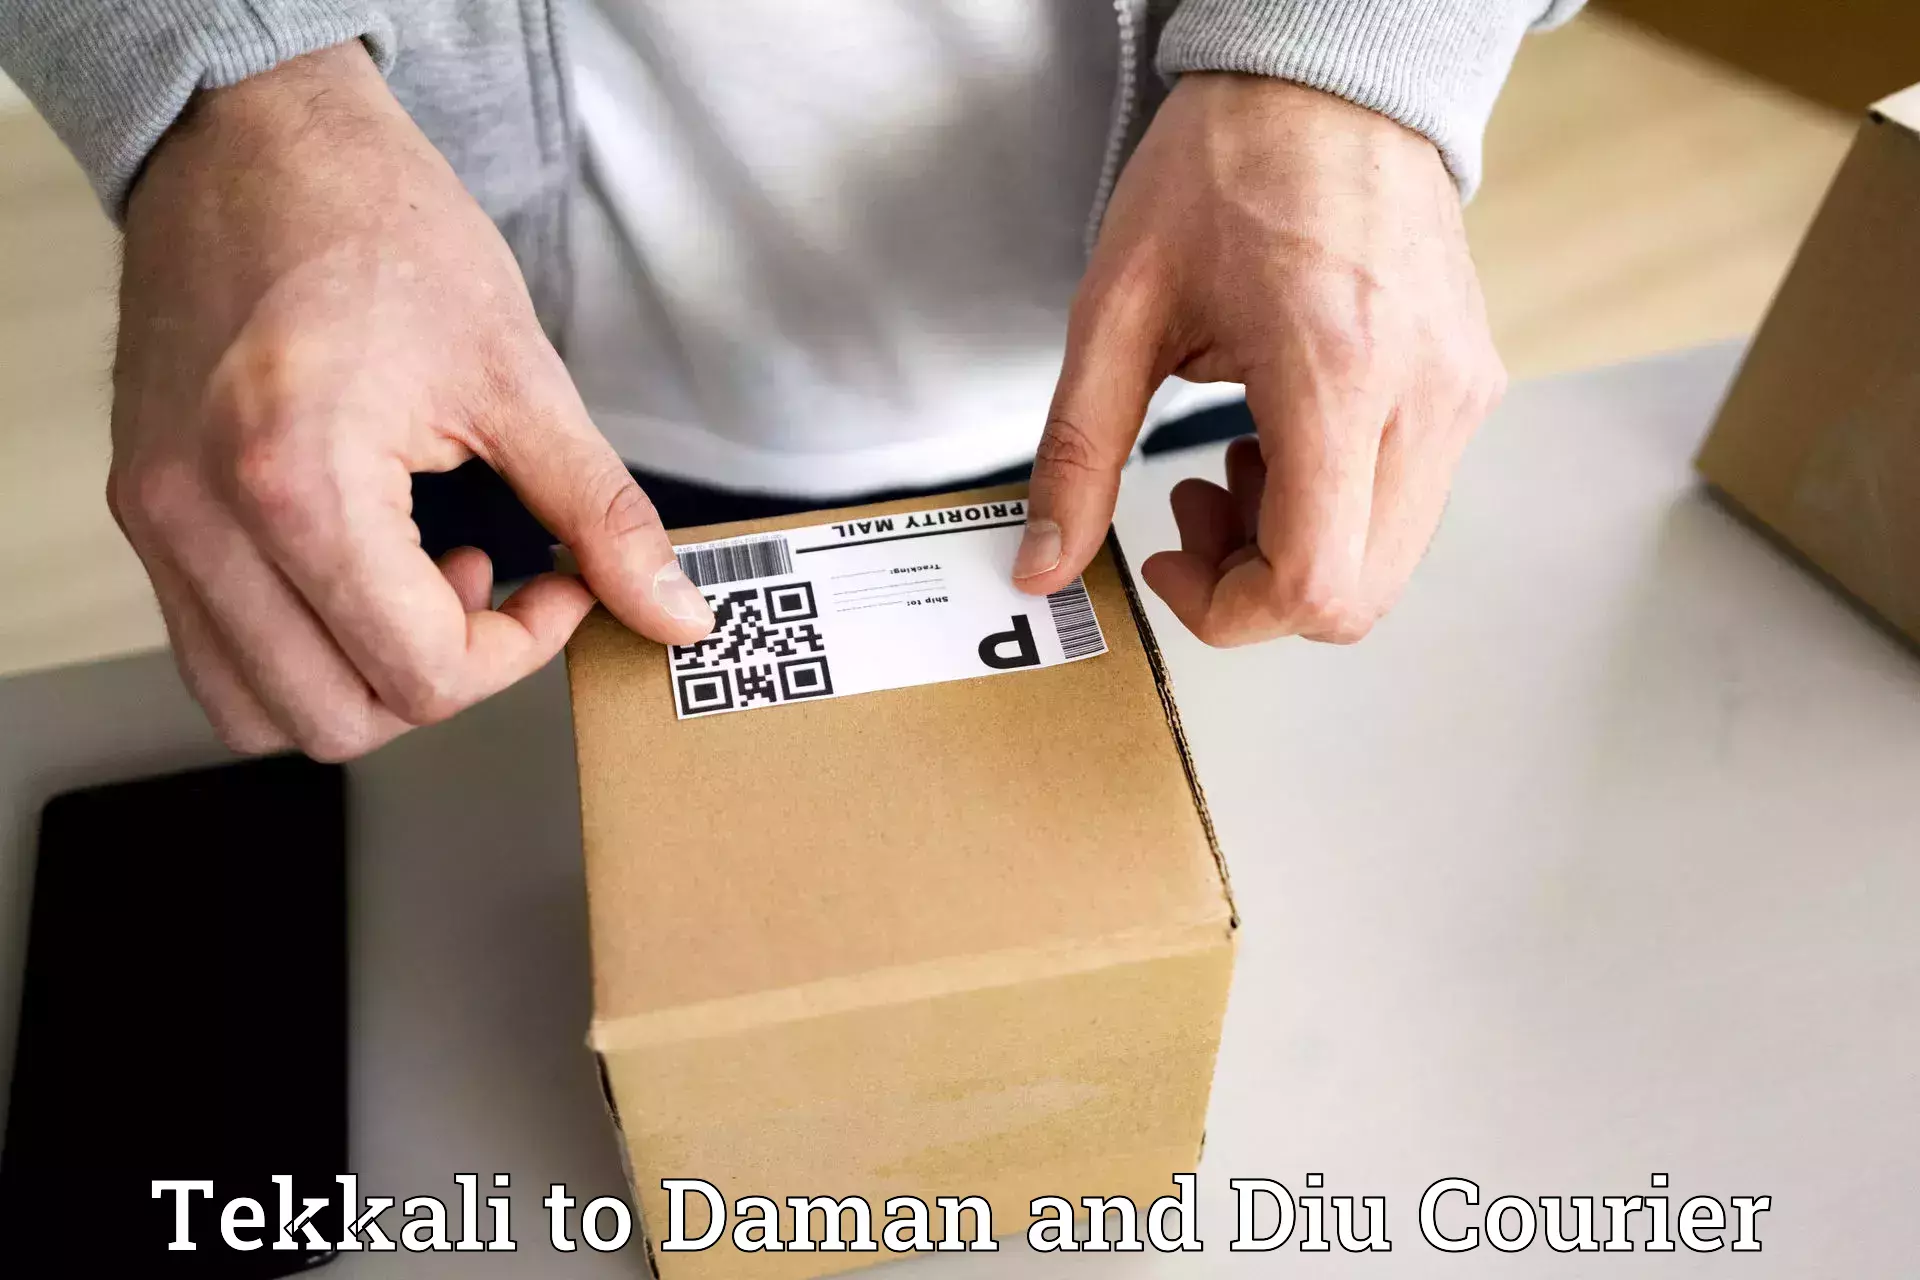 Logistics service provider Tekkali to Daman and Diu